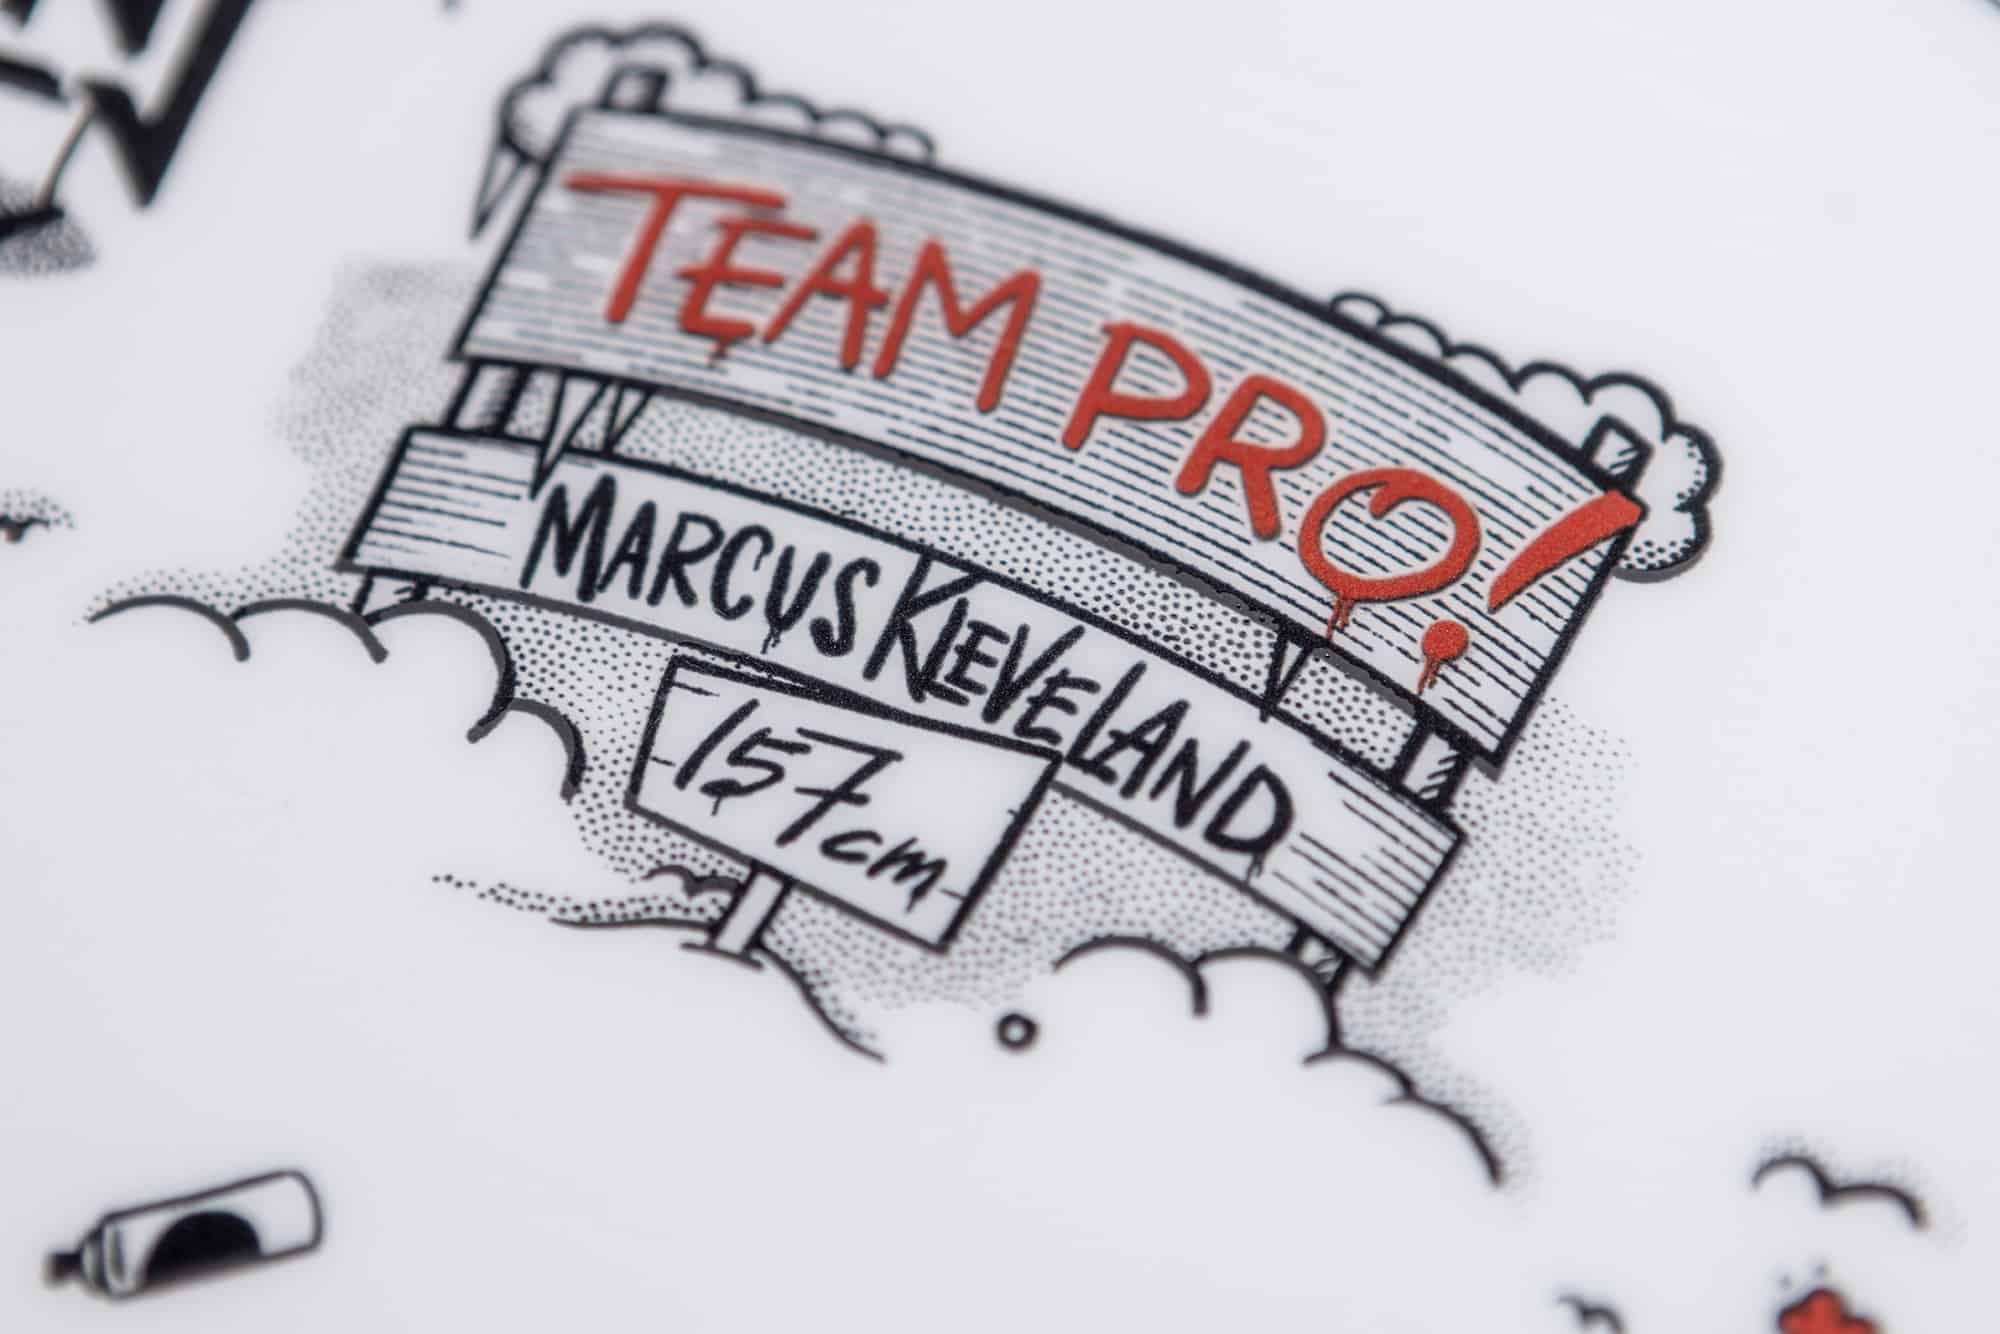 833018-001_Team-Pro-Marcus-Kleveland_Detail-1